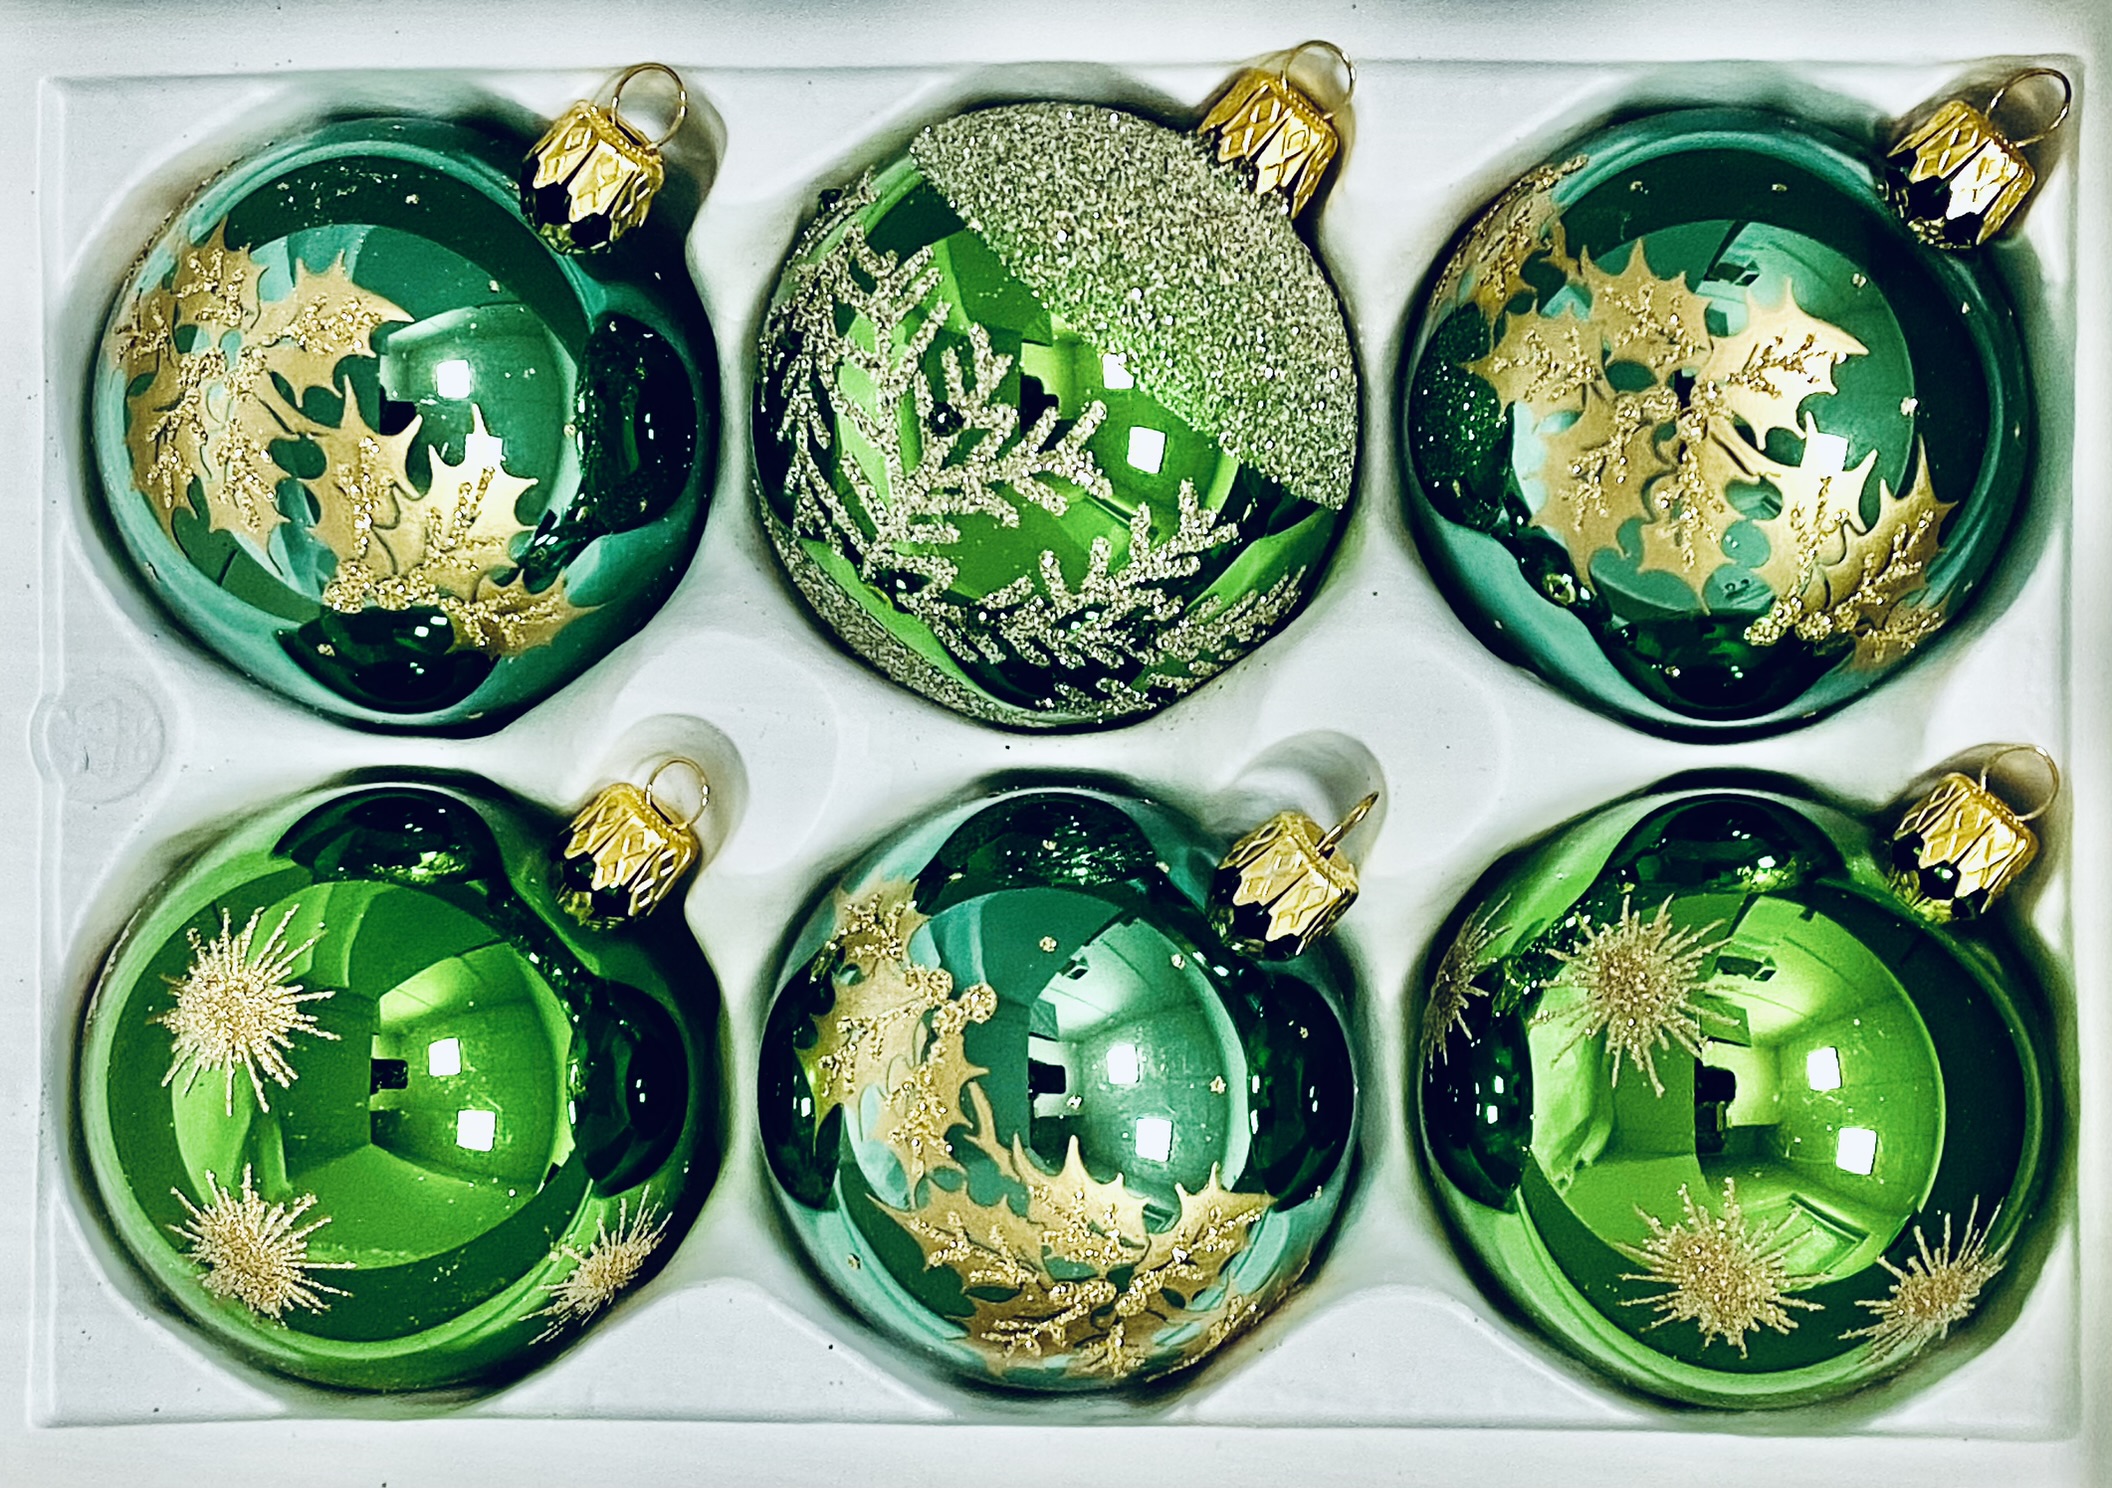 Zlatý lesní zázrak : sada 6 skleněných vánočních koulí se zlatým motivem , velikost 7 cm, zelená Balení: 6 ks, Barva: zelená, Velikost: 7 cm